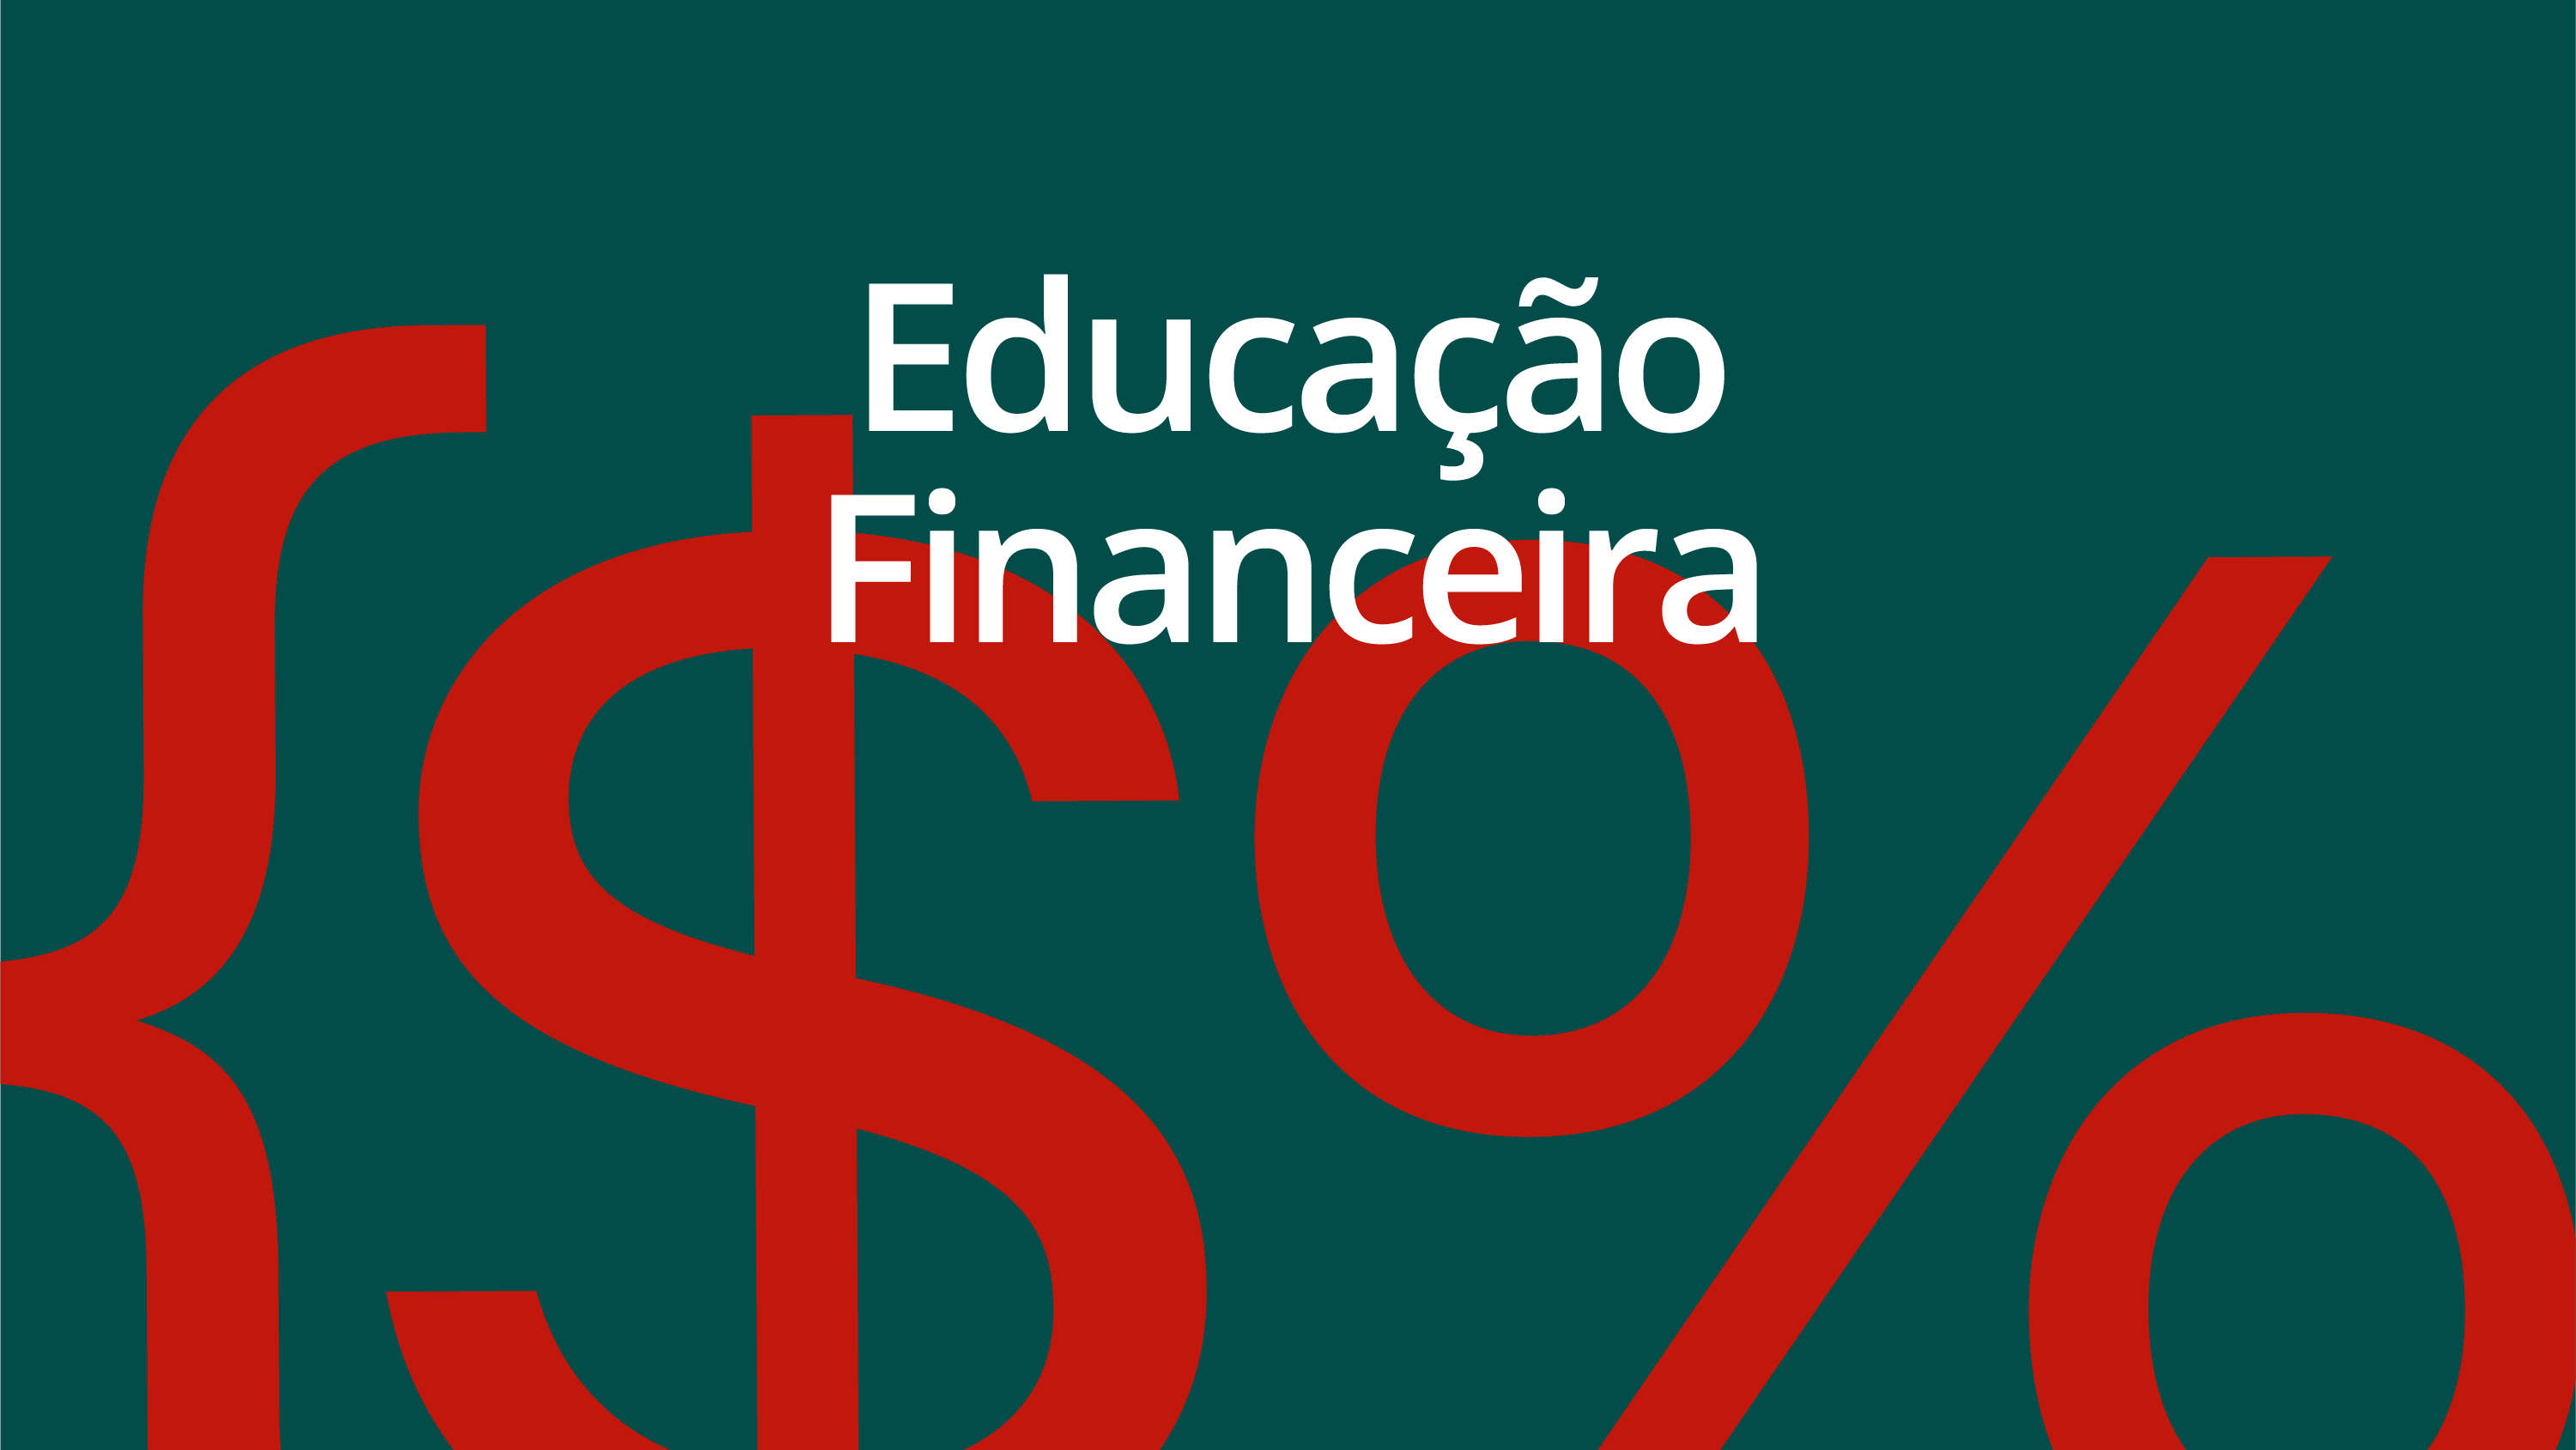 Educação Financeira #283: como aproveitar a queda de juros para escolher um imóvel